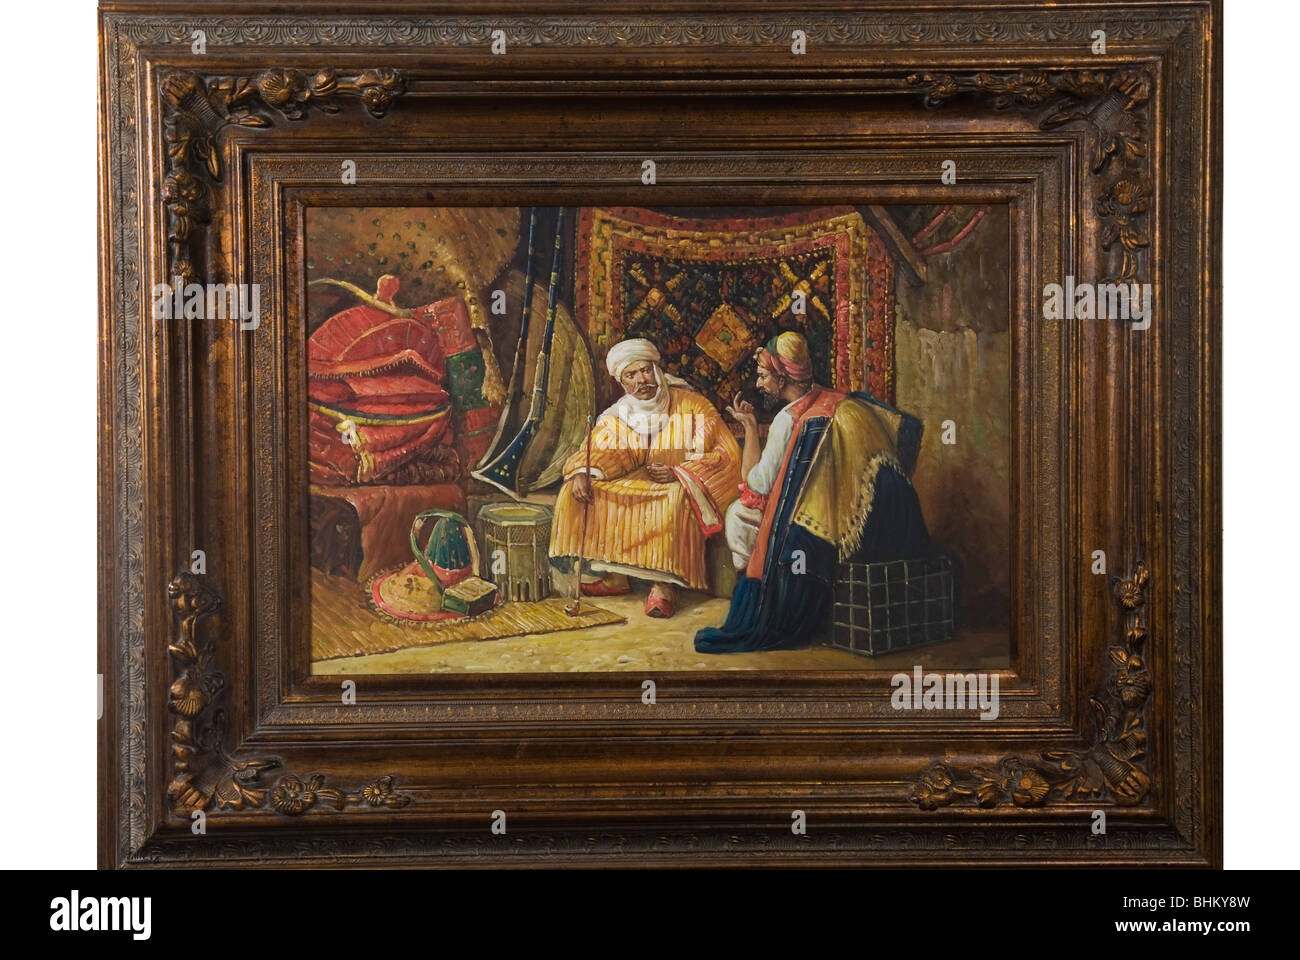 Arabische Malerei innerhalb eines Frames Stockfoto